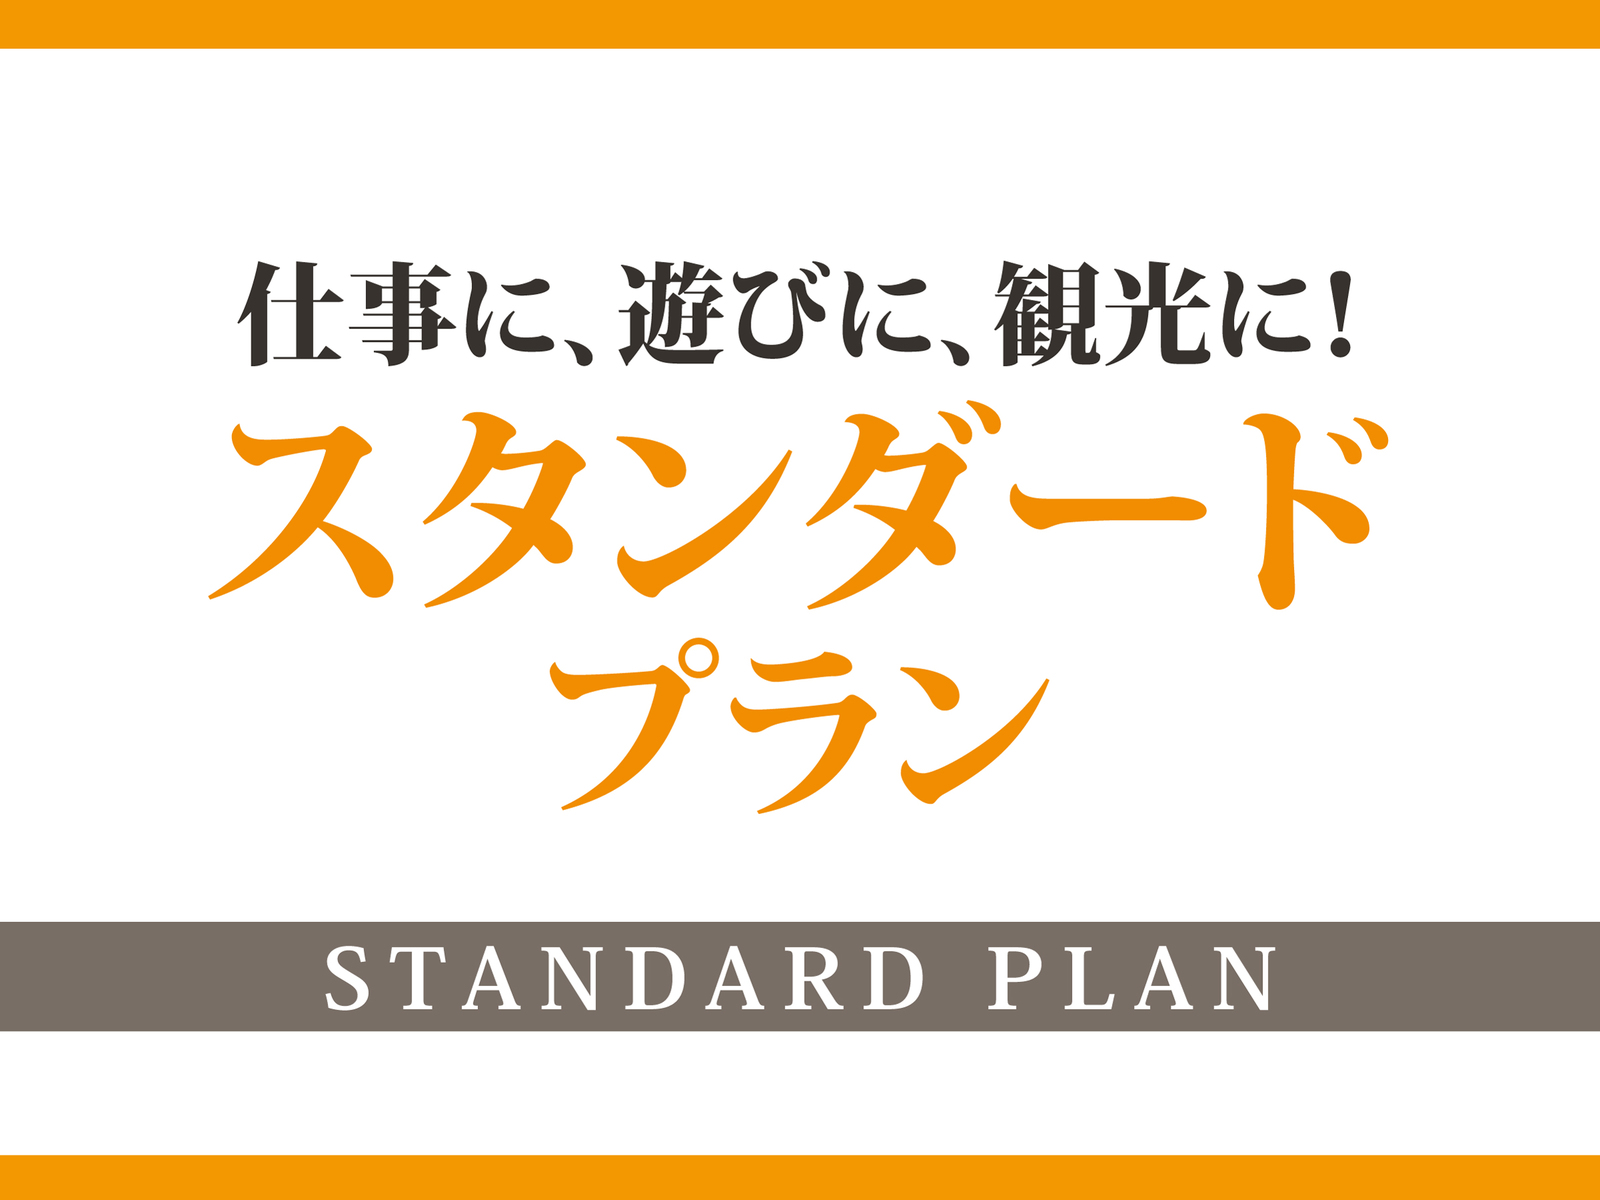 【STANDARD】 with Breakfast Plan.